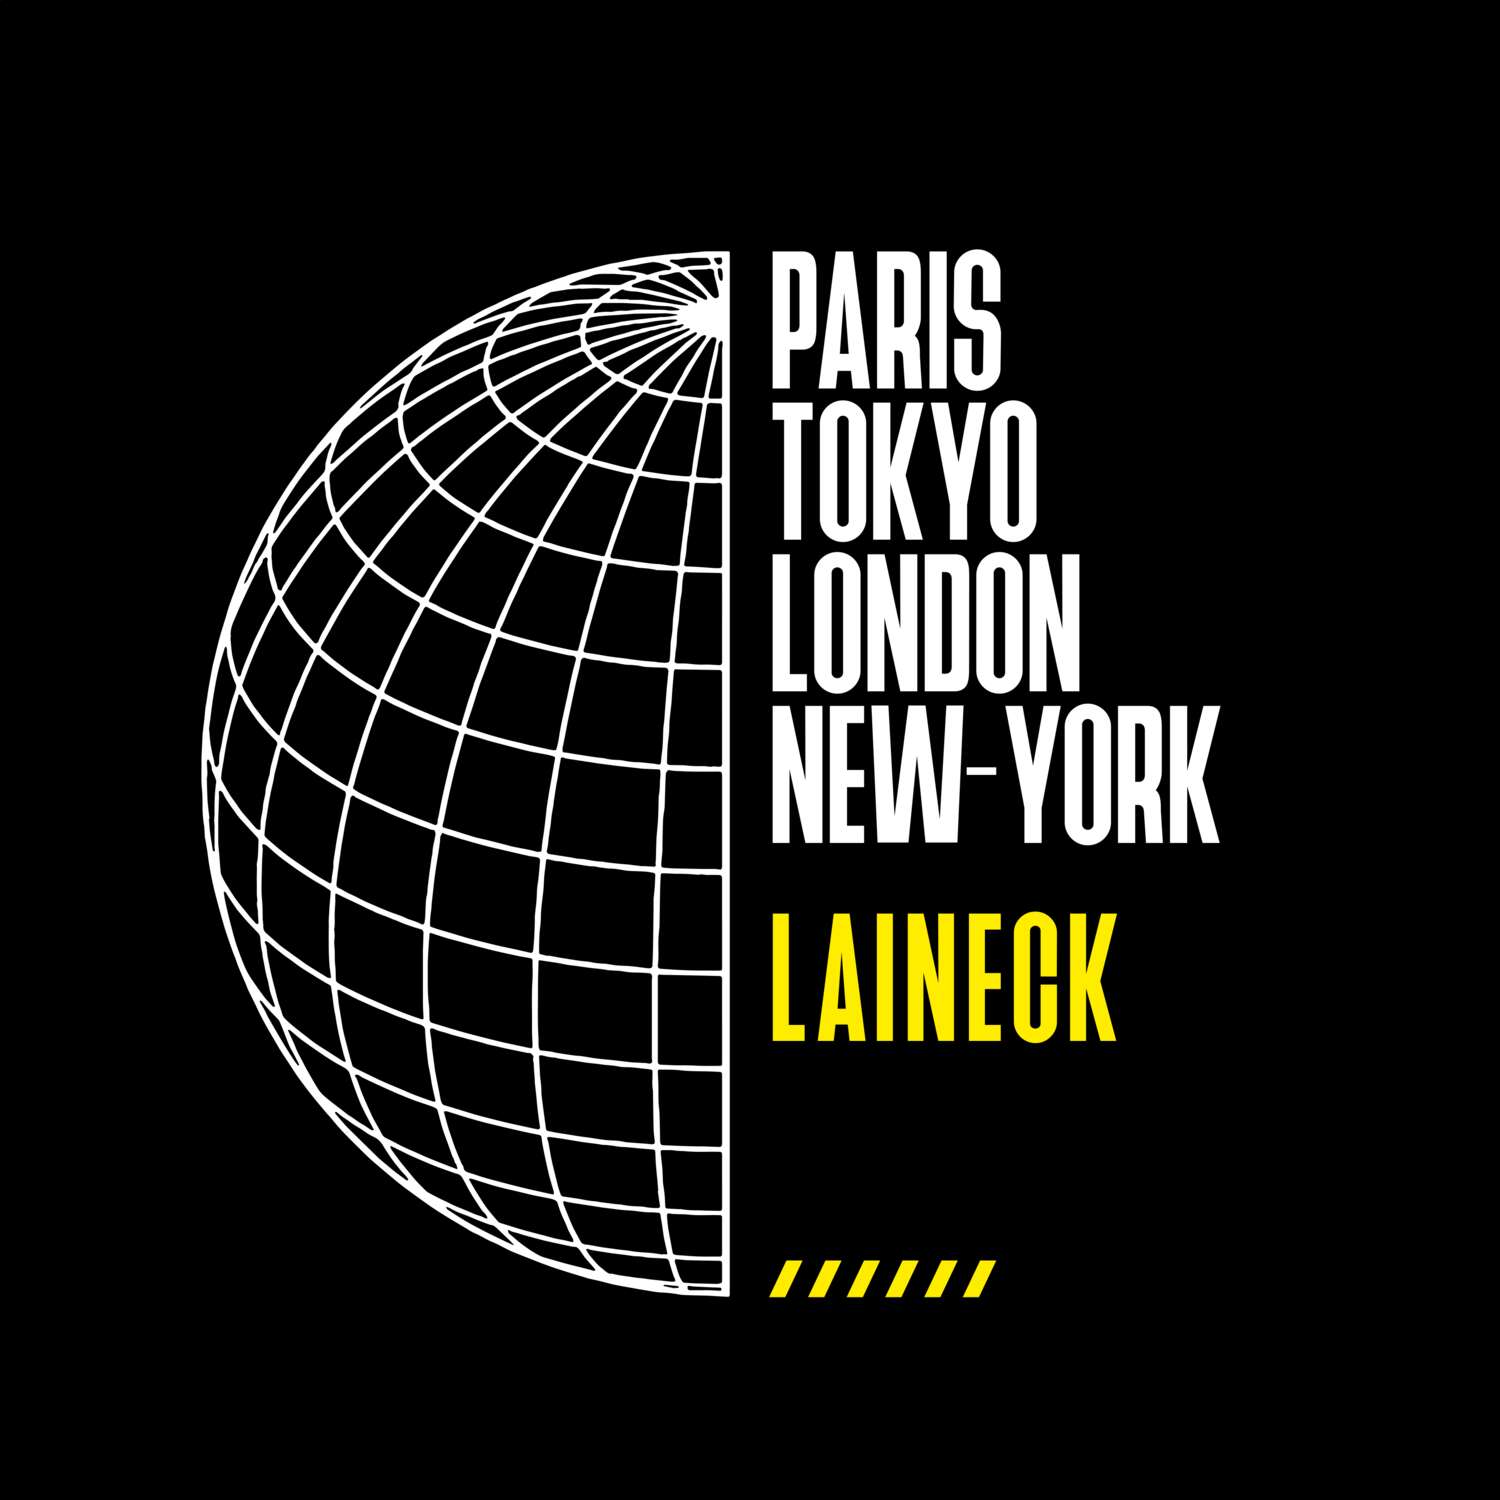 Laineck T-Shirt »Paris Tokyo London«